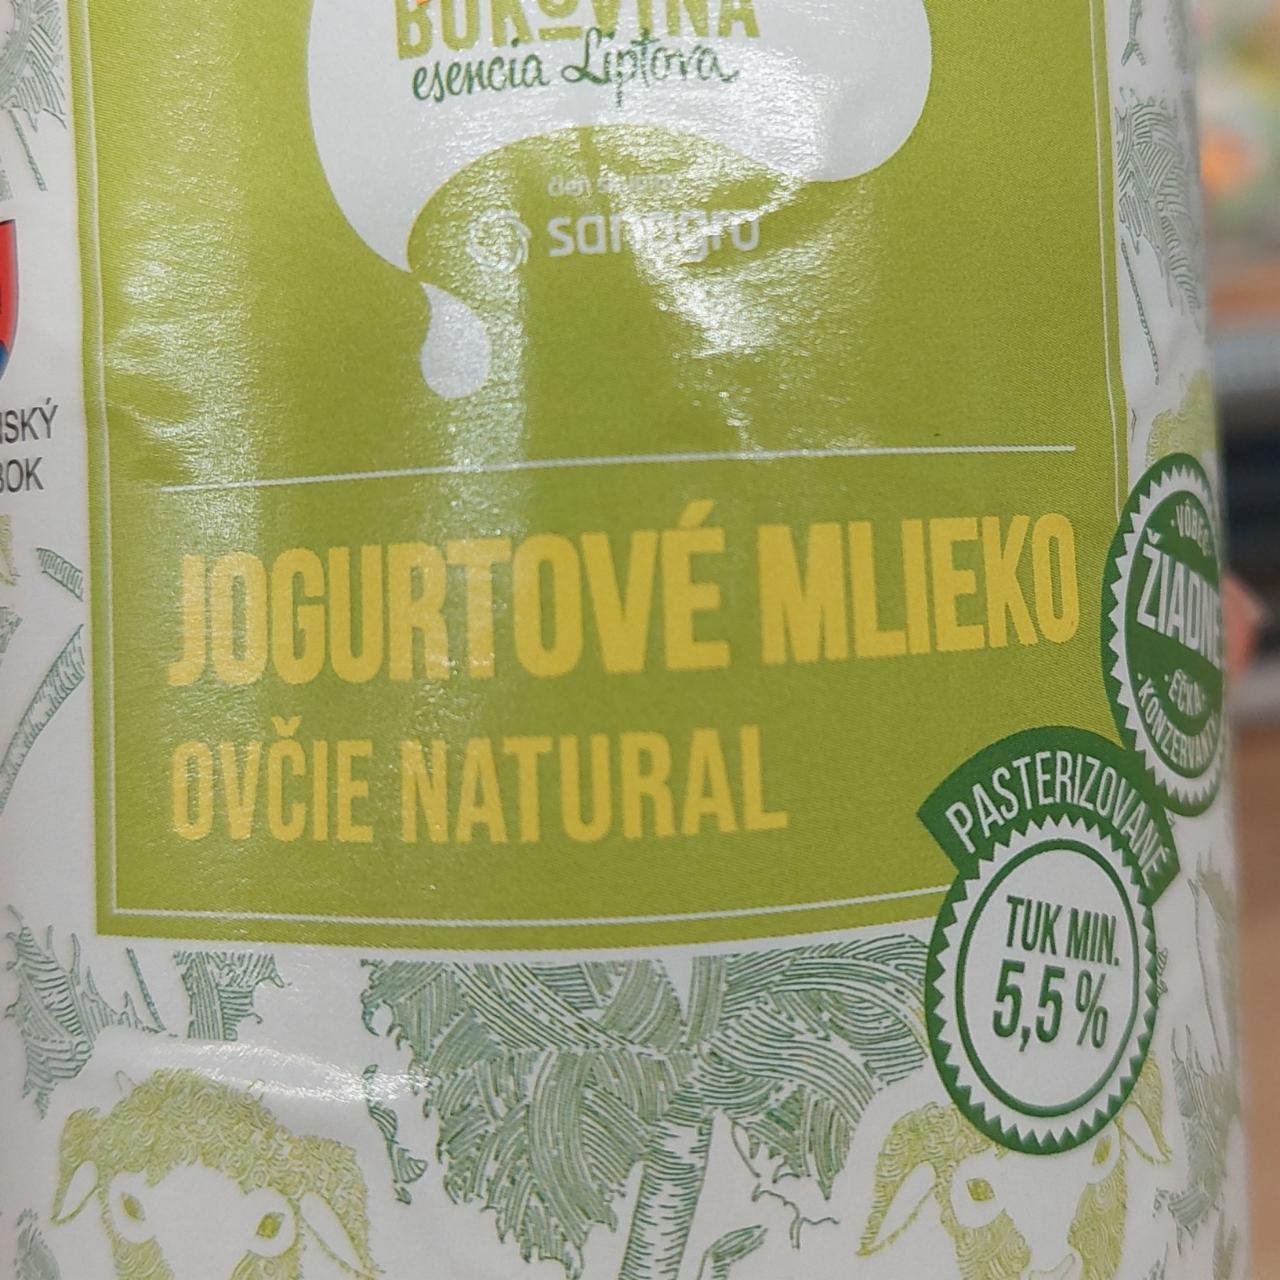 Fotografie - Jogurtové mlieko ovčie natural Bukovina